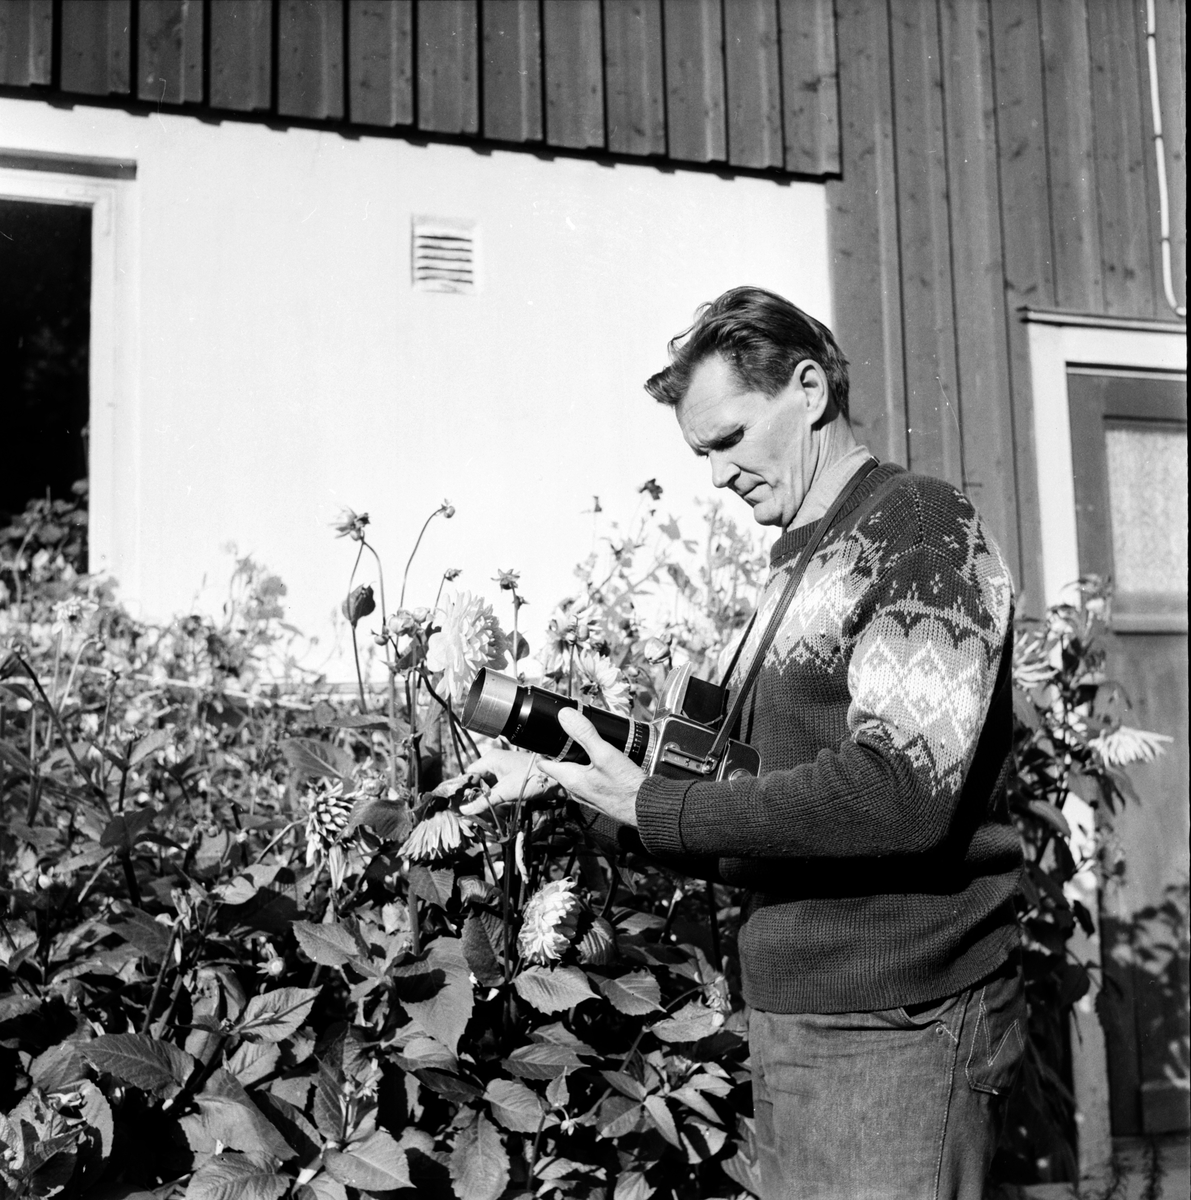 Mickelsson Hilding,
Glössbo,
17 Sept 1966